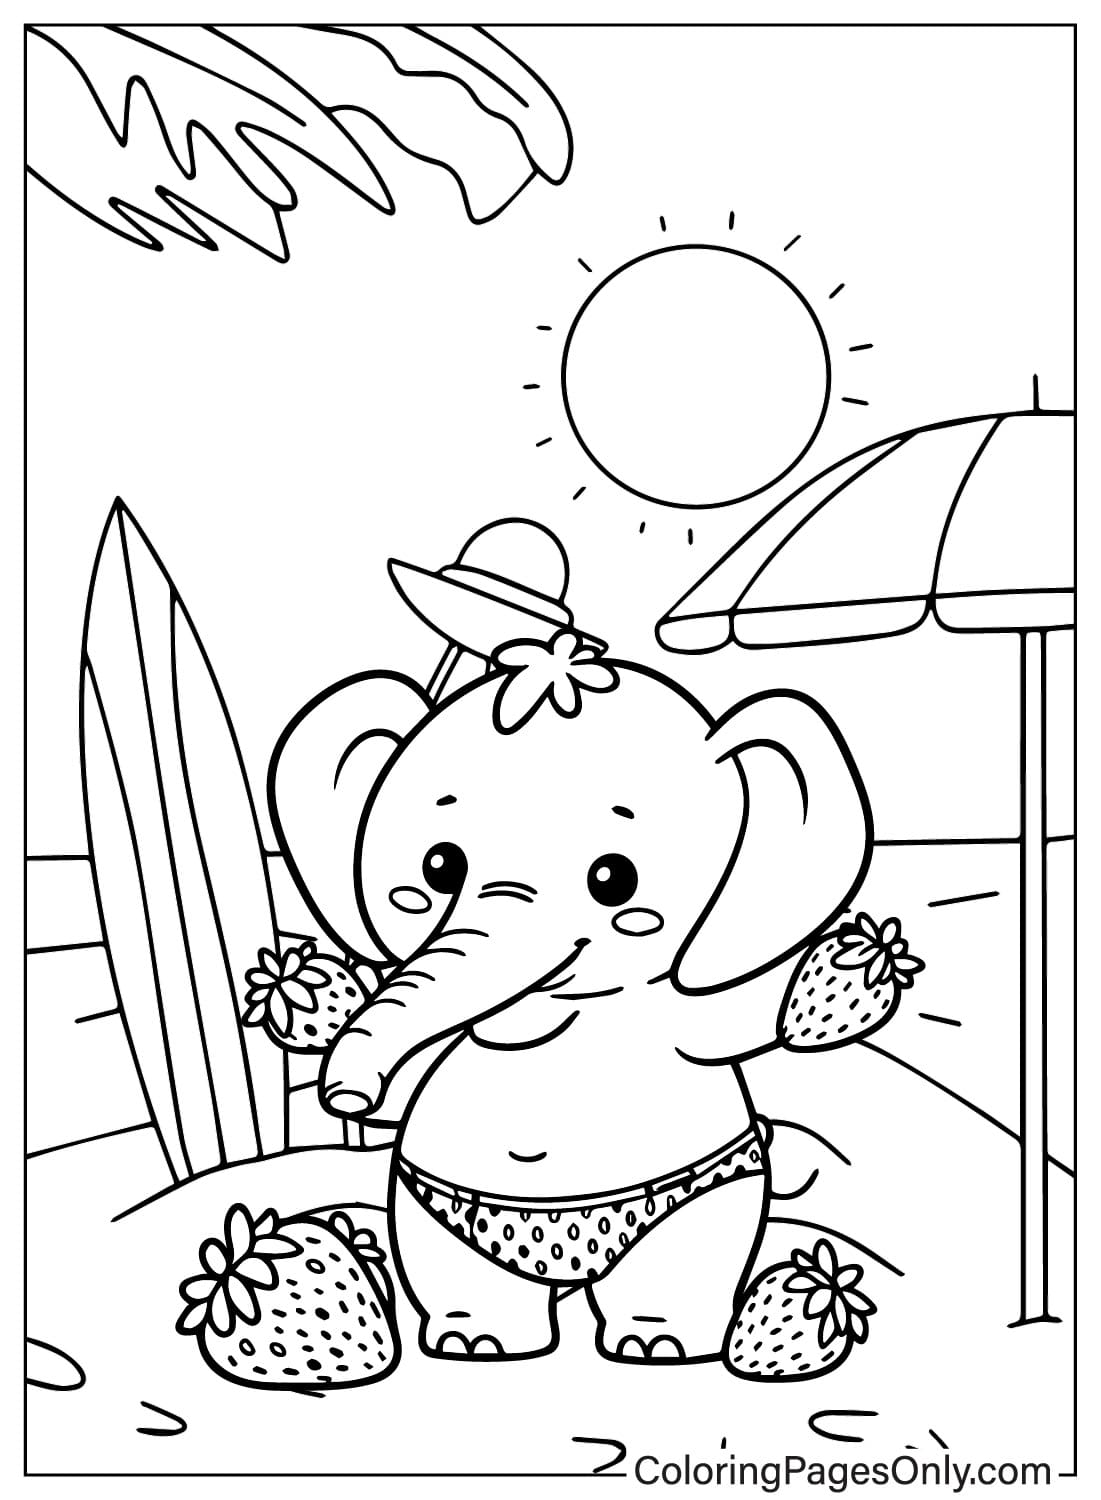 Página para colorear de elefante de fresa gratis de Strawberry Elephant